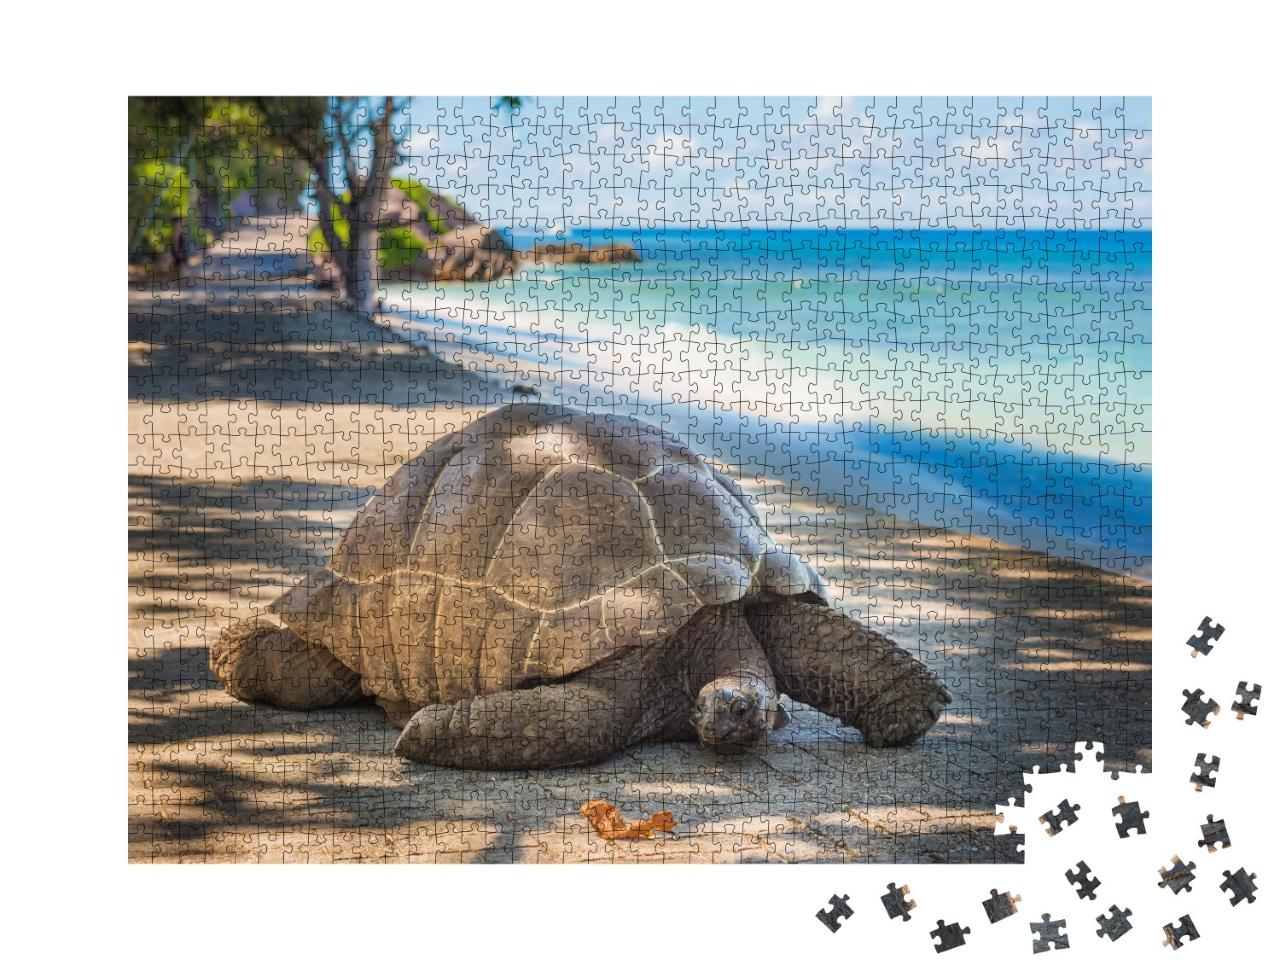 Puzzle de 1000 pièces « Tortue géante des Seychelles »